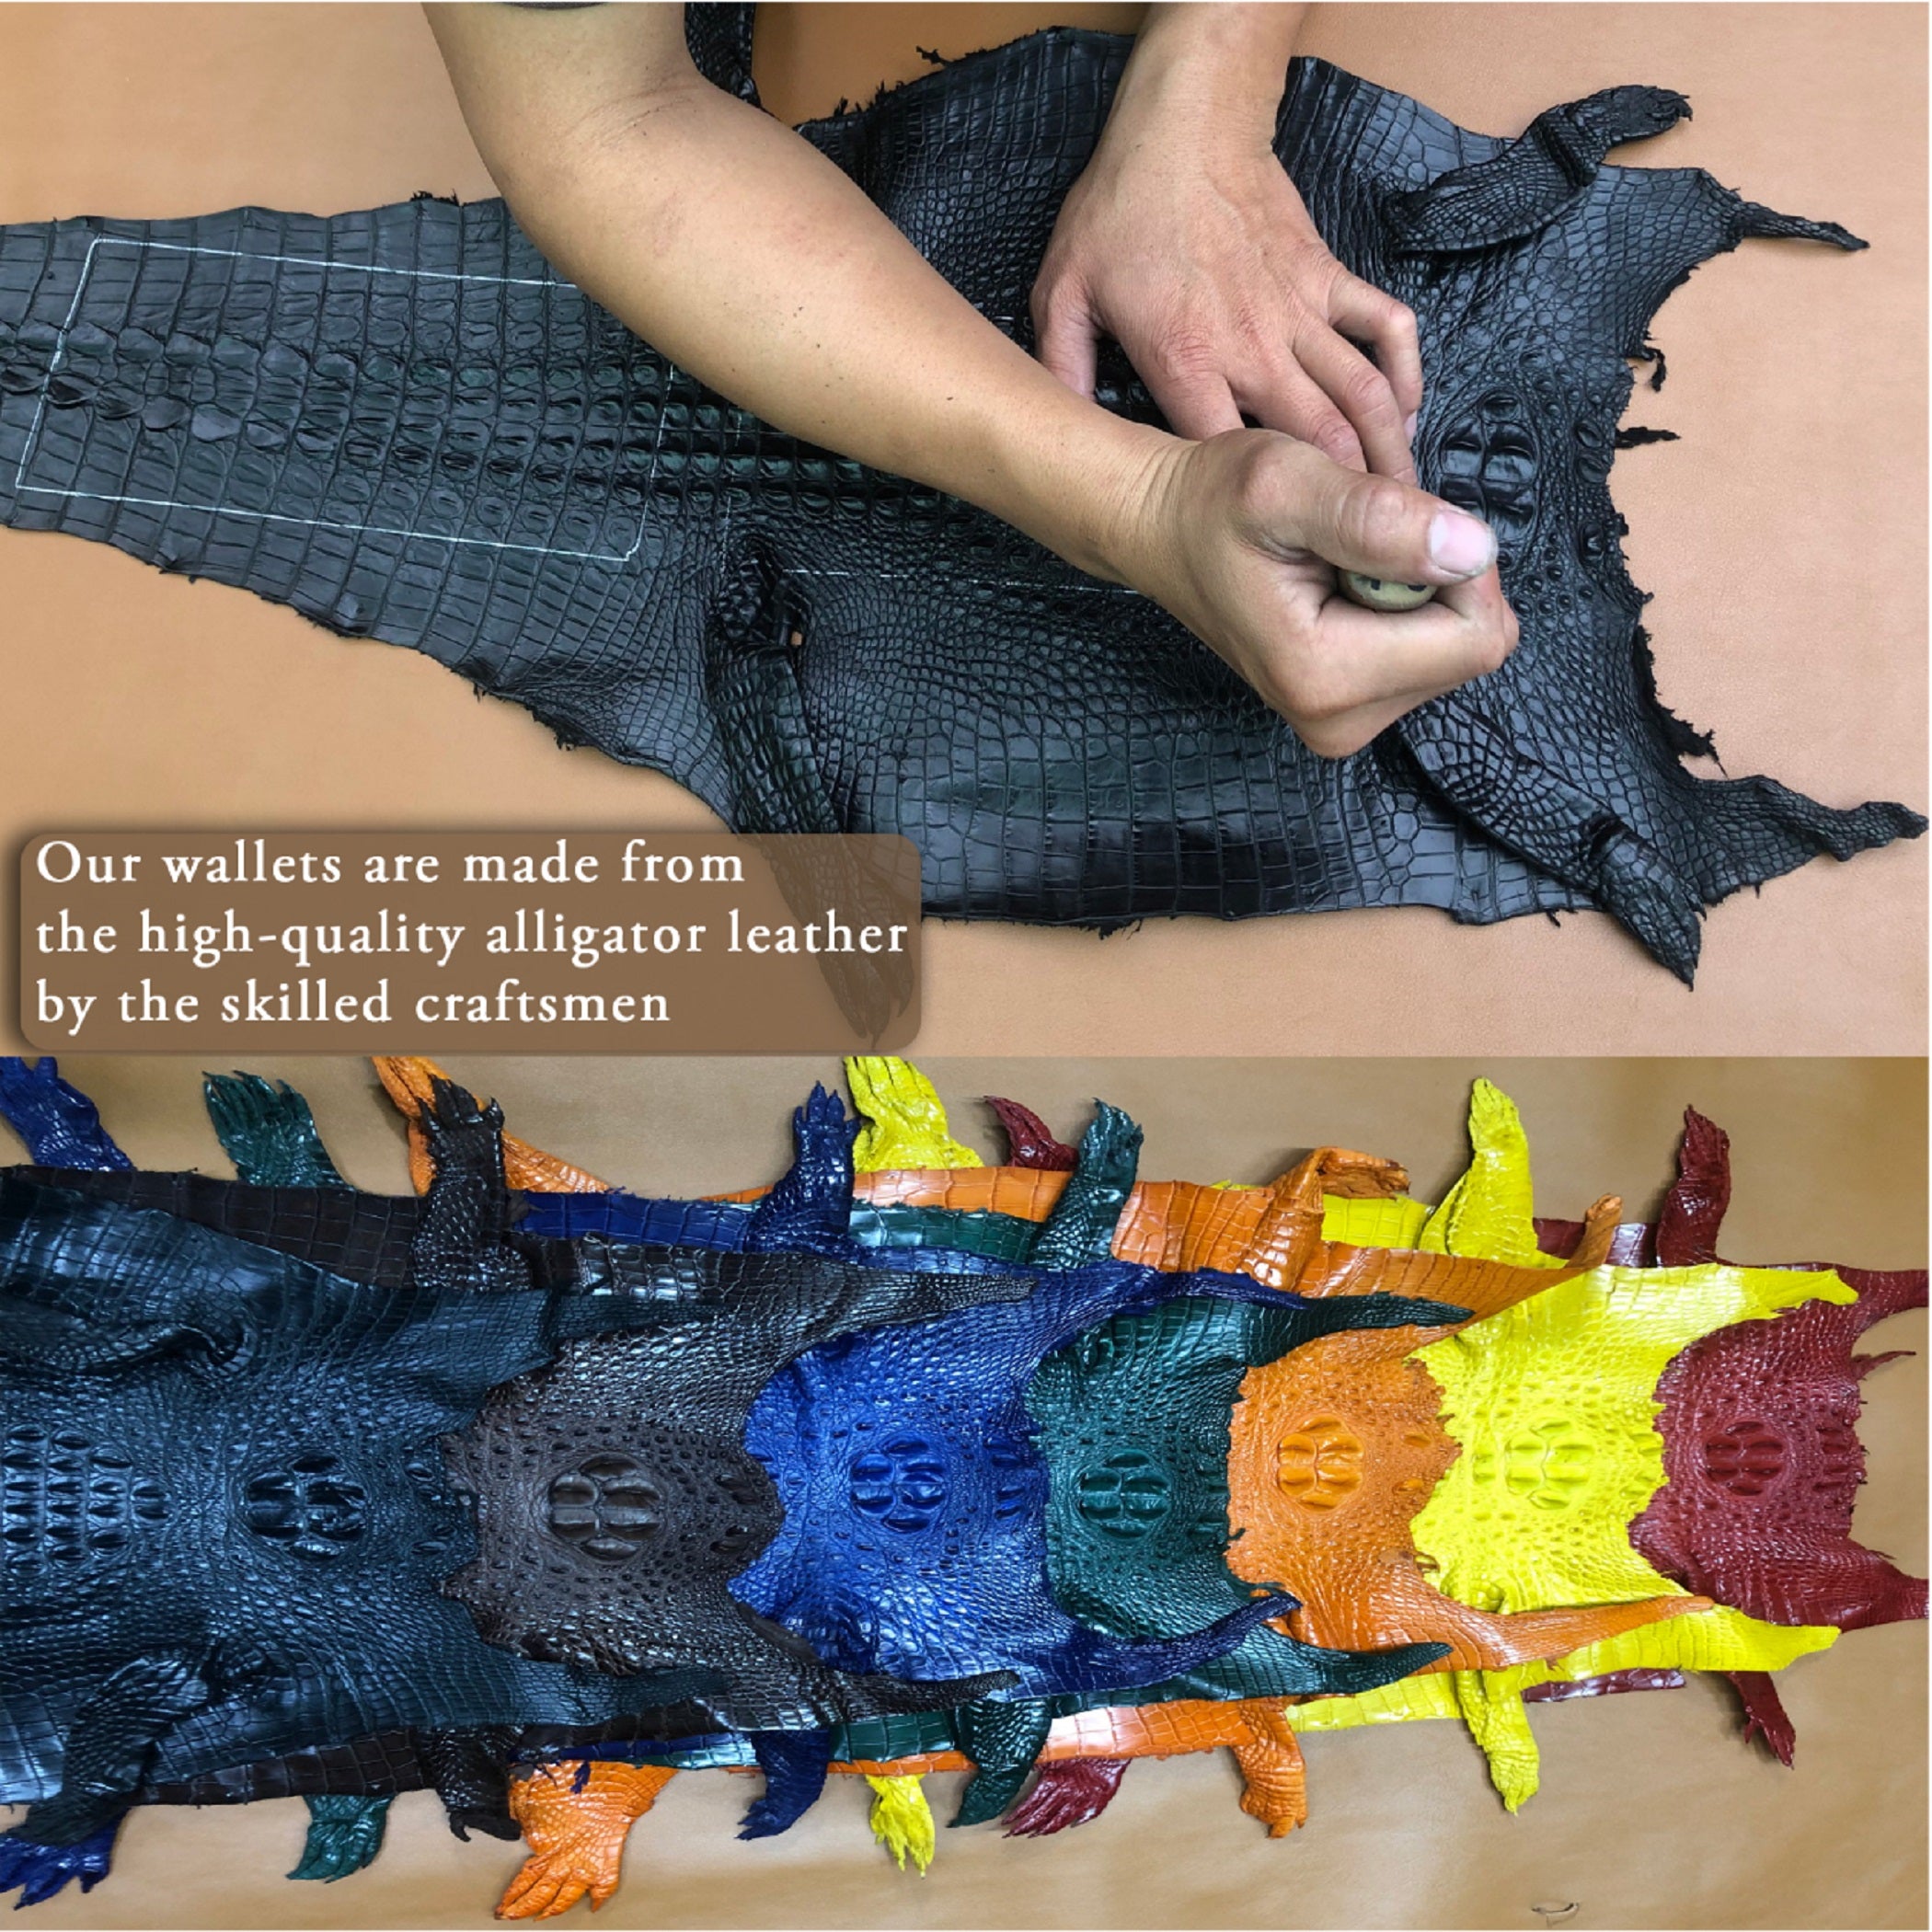 Black & Navy Blue Double Side Alligator Leather Credit Card Holder | RFID Blocking | CARD-16